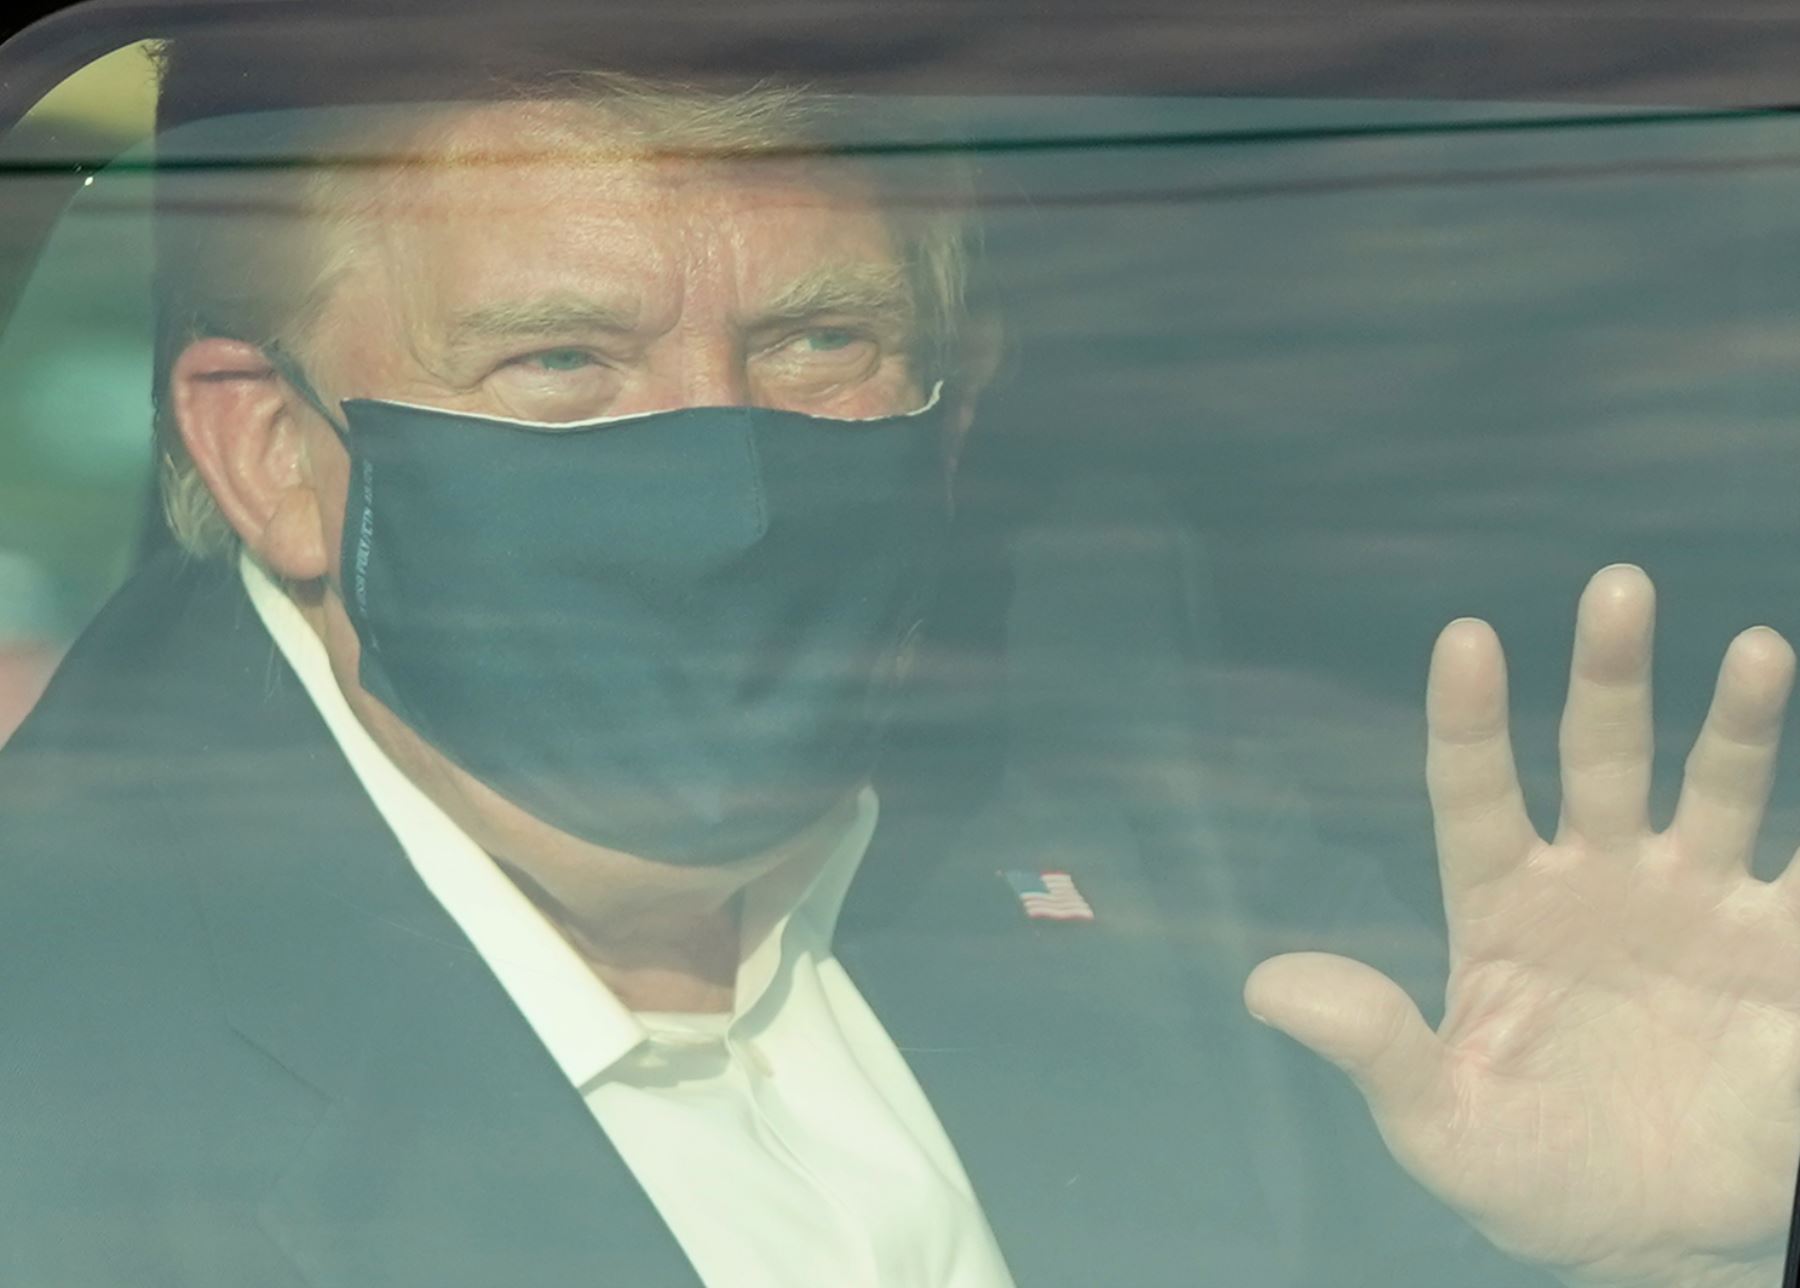 El presidente de EE. UU., Donald Trump, pasó junto a sus partidarios fuera del hospital donde estaba siendo tratado por Covid-19. Foto: AFP